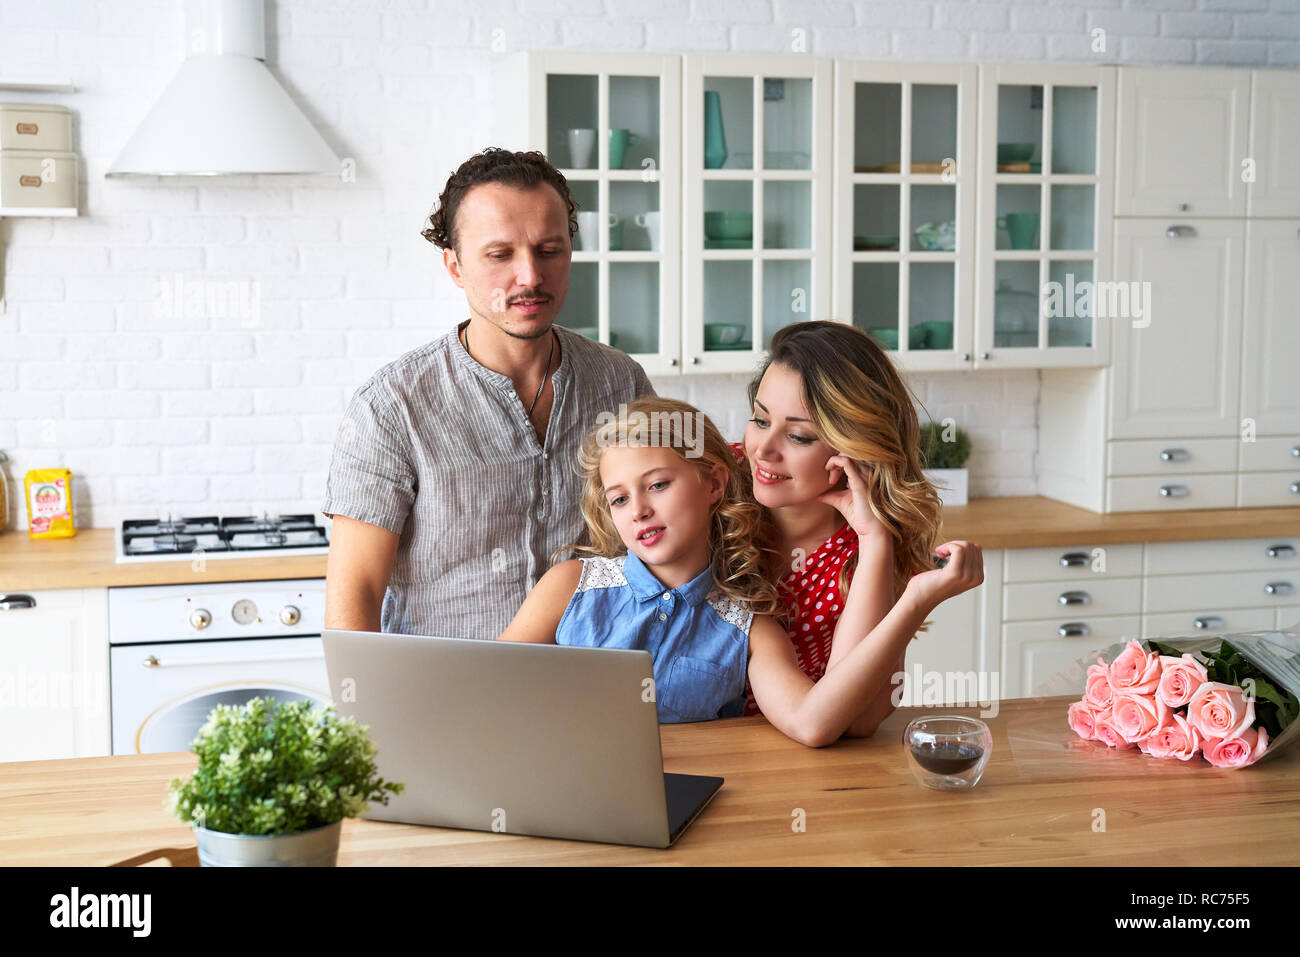 Junge, glückliche Familie im Internet surfen mit Laptop am Tisch in der Küche Stockfoto